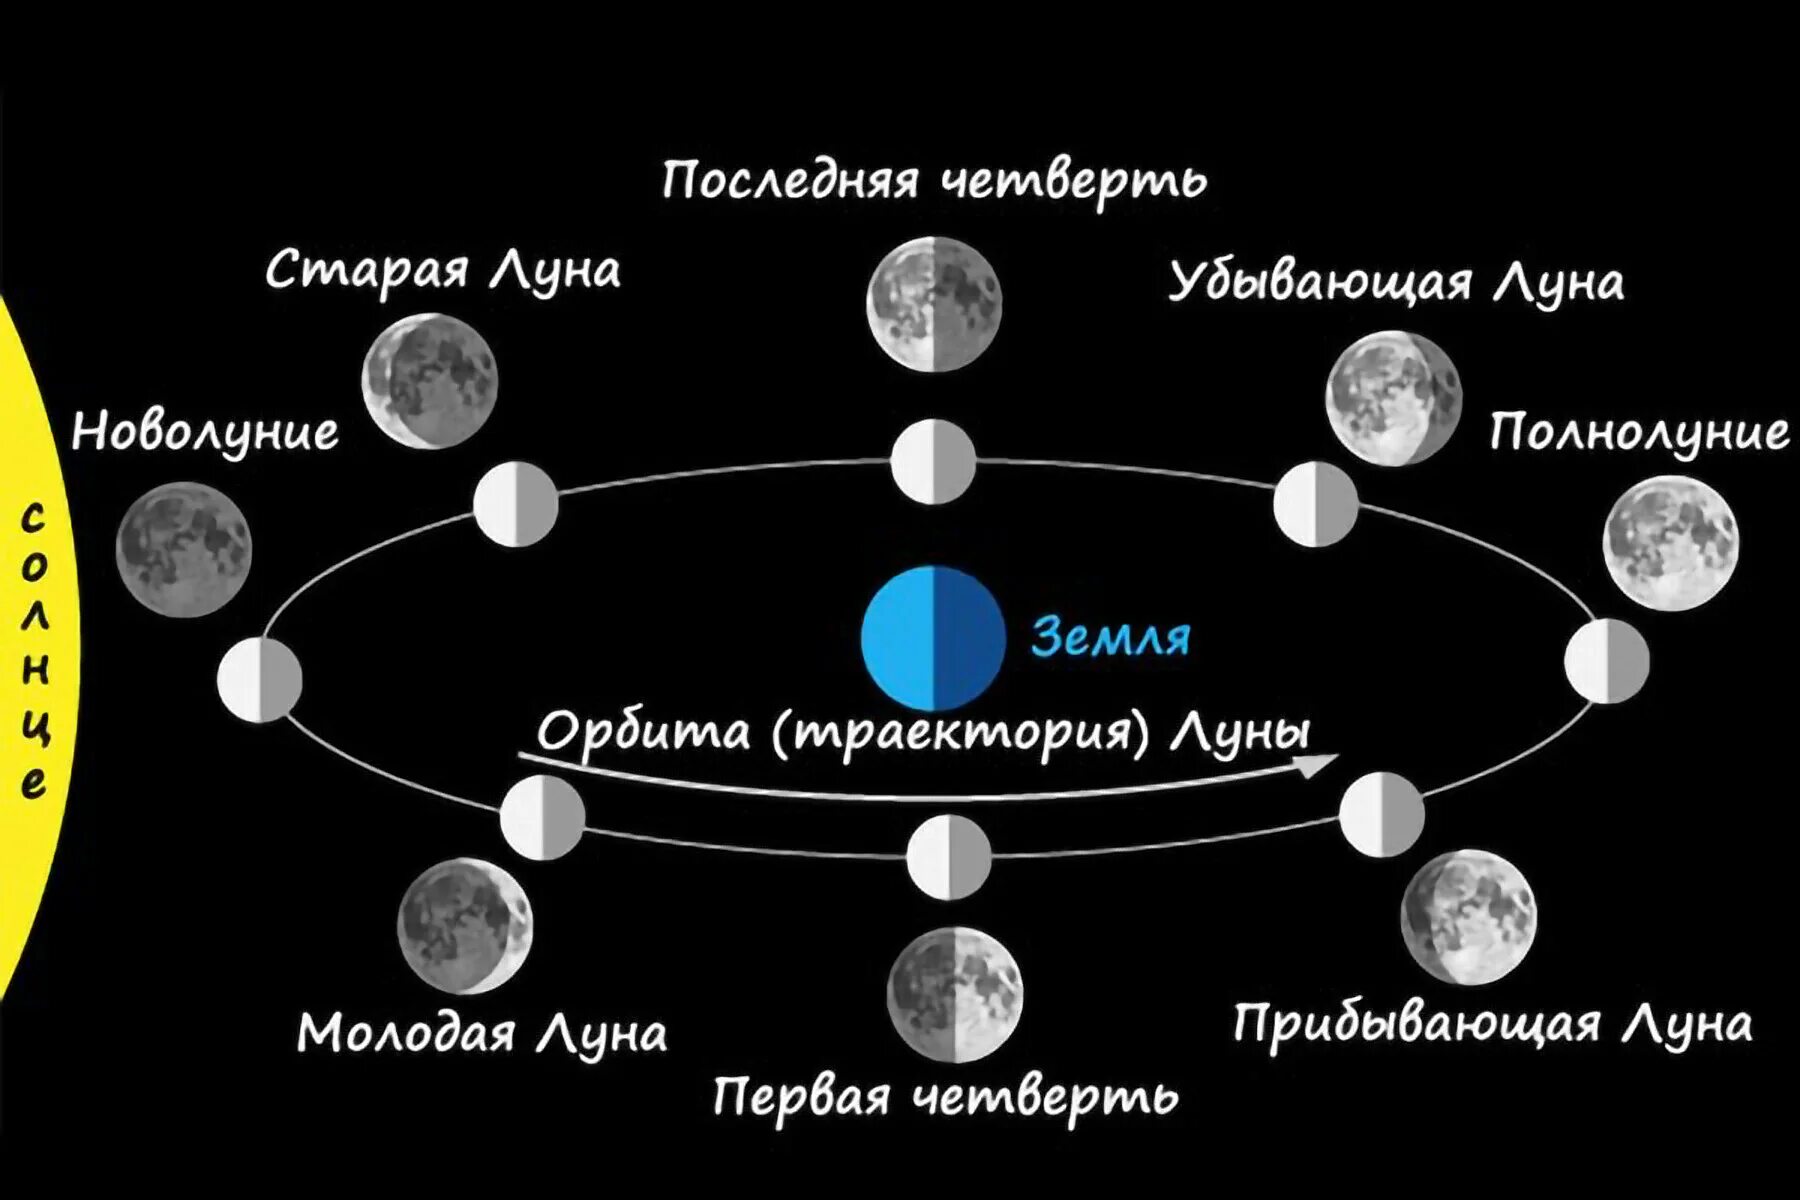 Соединение луна луна в транзите. Фазы Луны. Схема лунных фаз. Фазы Луны с названиями. Схема смены фаз Луны.